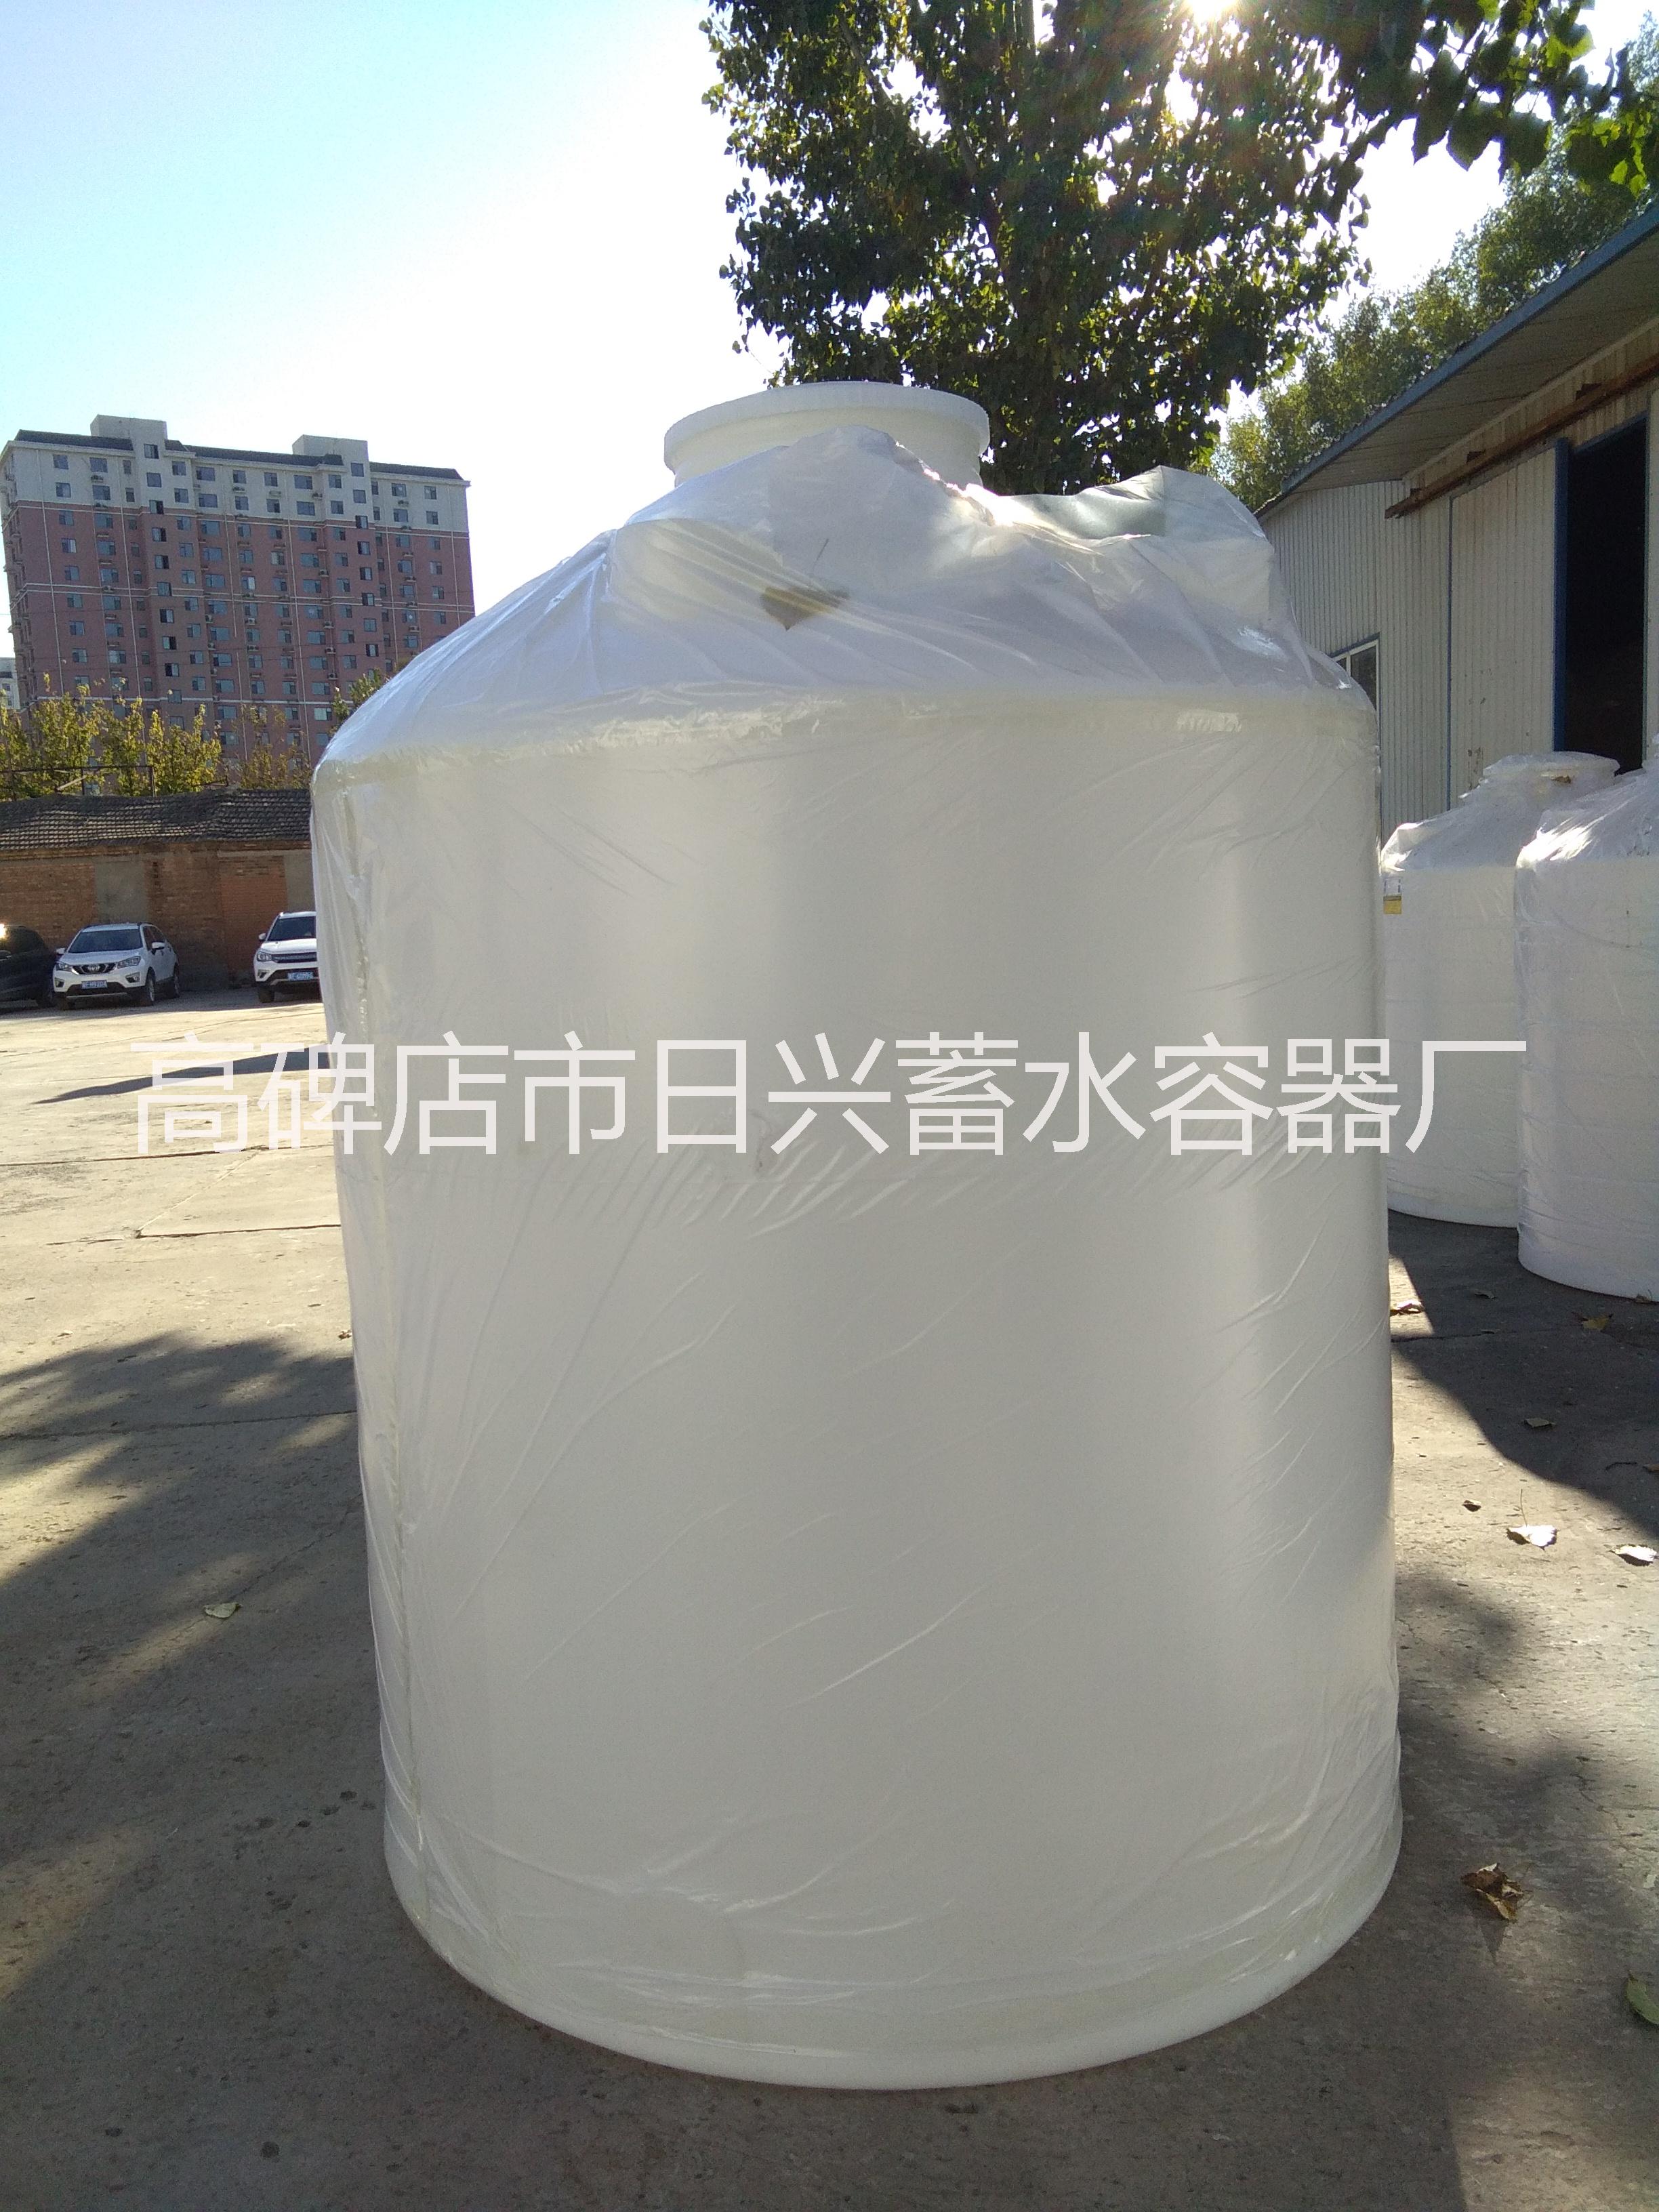 北京石景山塑料水箱厂家有哪些批发